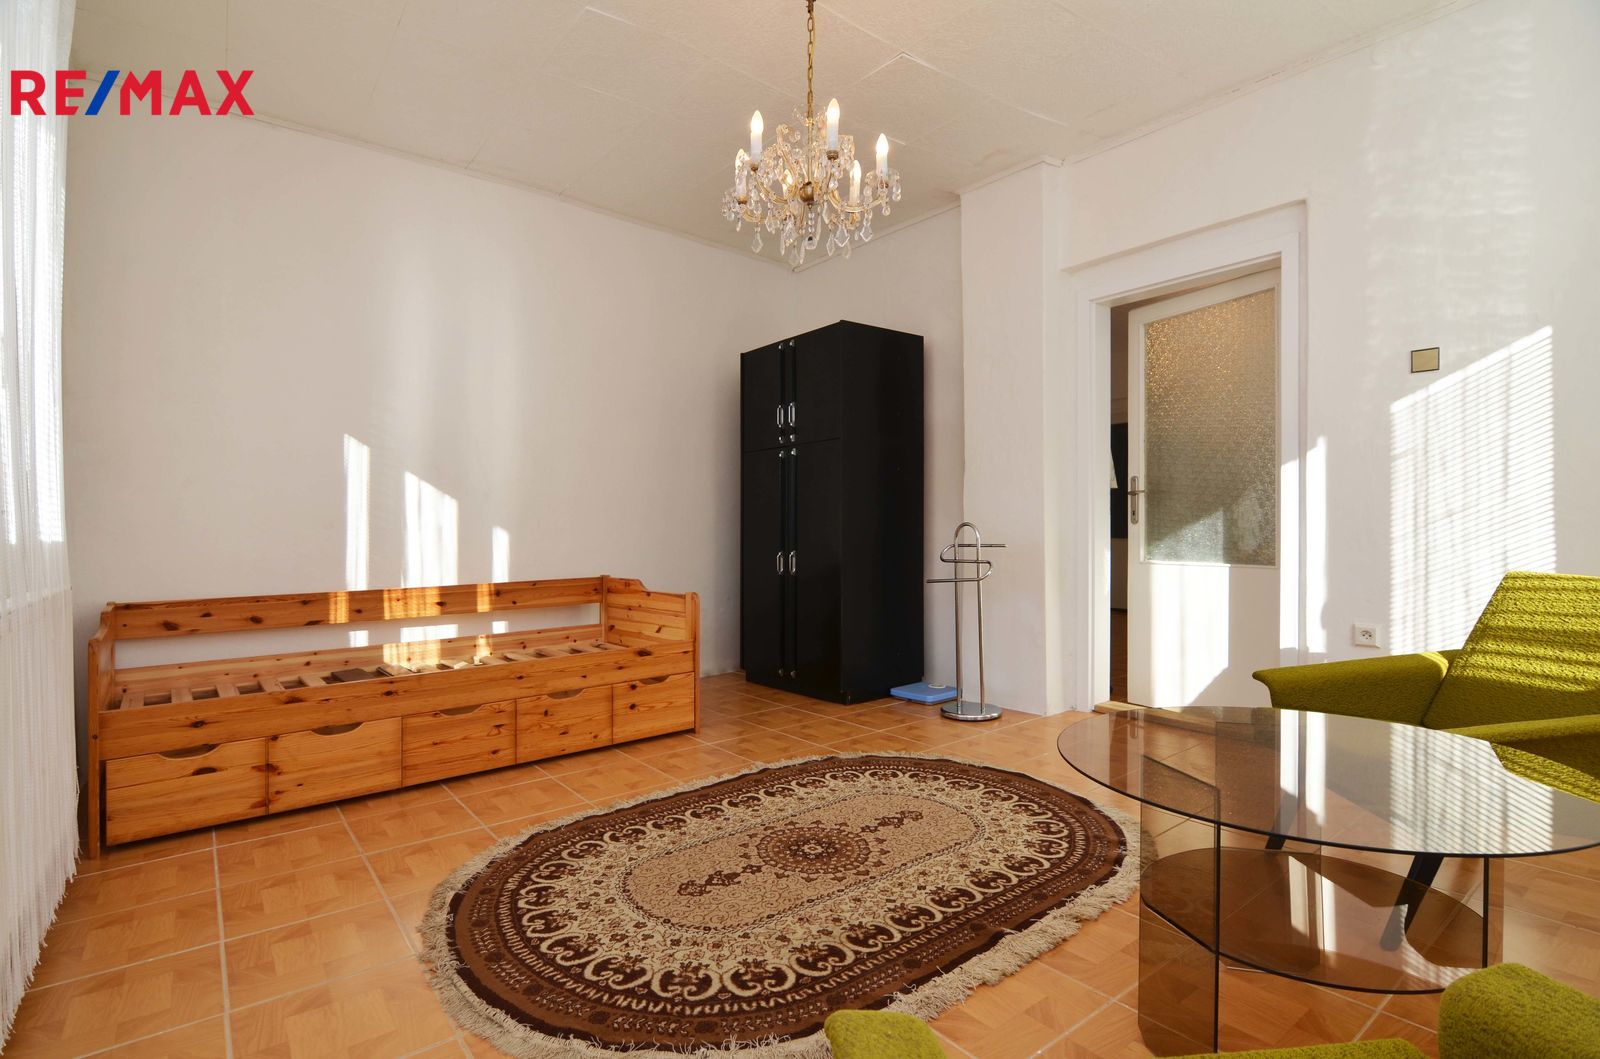 Pronájem bytu 3+1 v osobním vlastnictví, 80 m2, Praha 5 - Slivenec